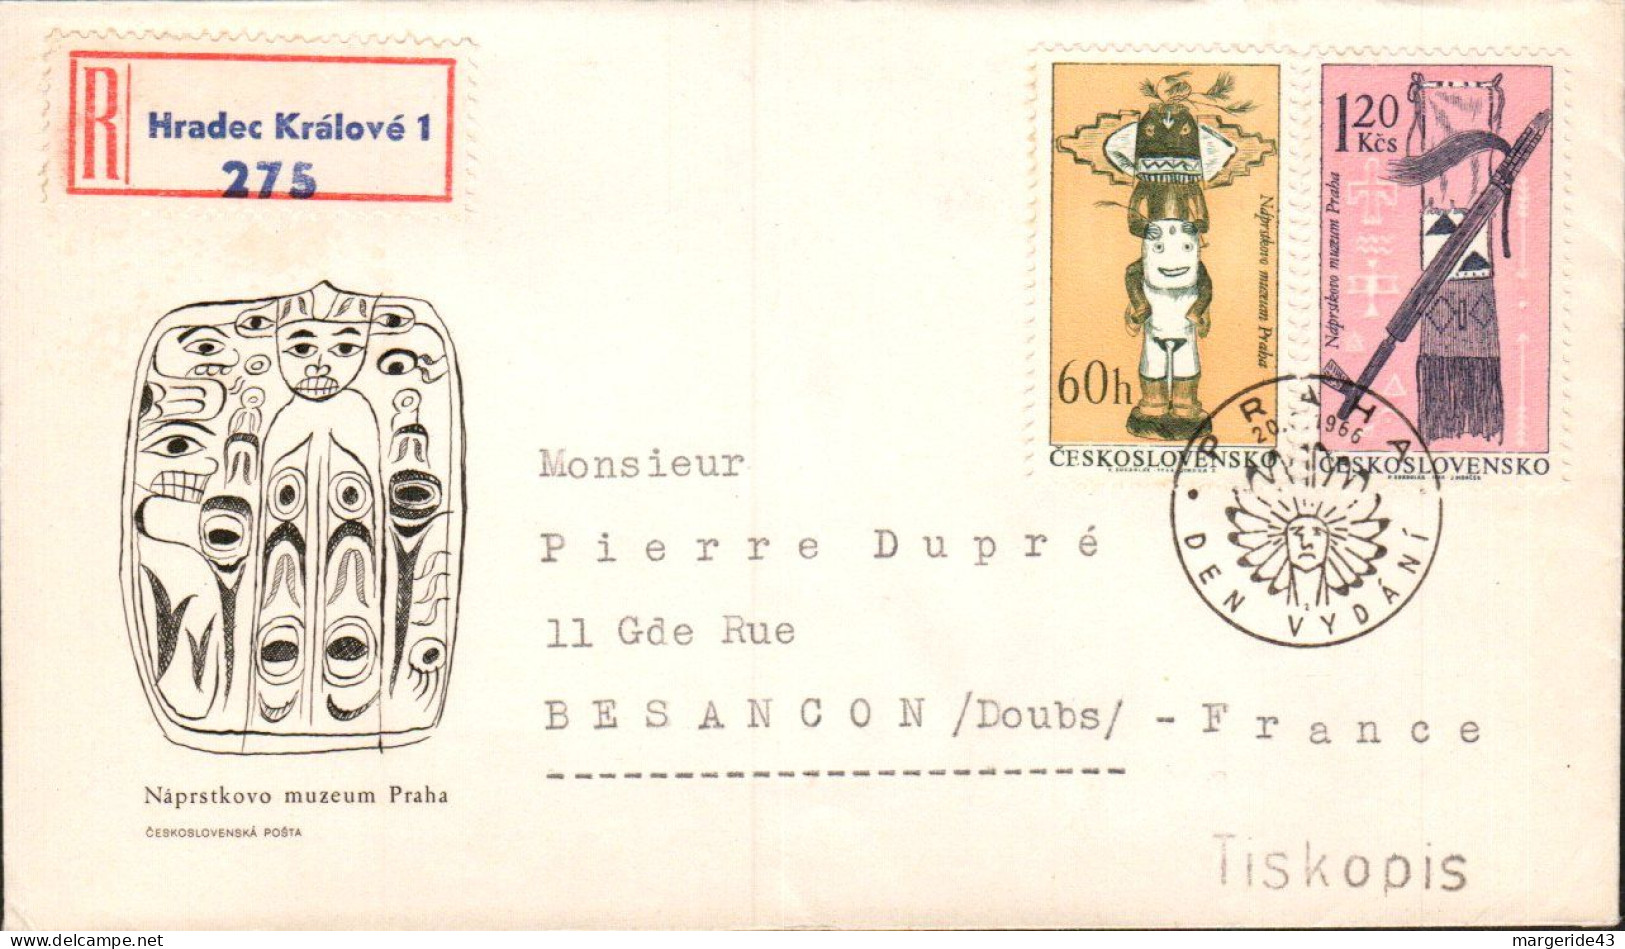 TCHECOSLOVAQUIE LETTRE FDC RECOMMANDEE "MUSEE ETHNOLOGIQUE" POUR LA FRANCE 1966 - Lettres & Documents